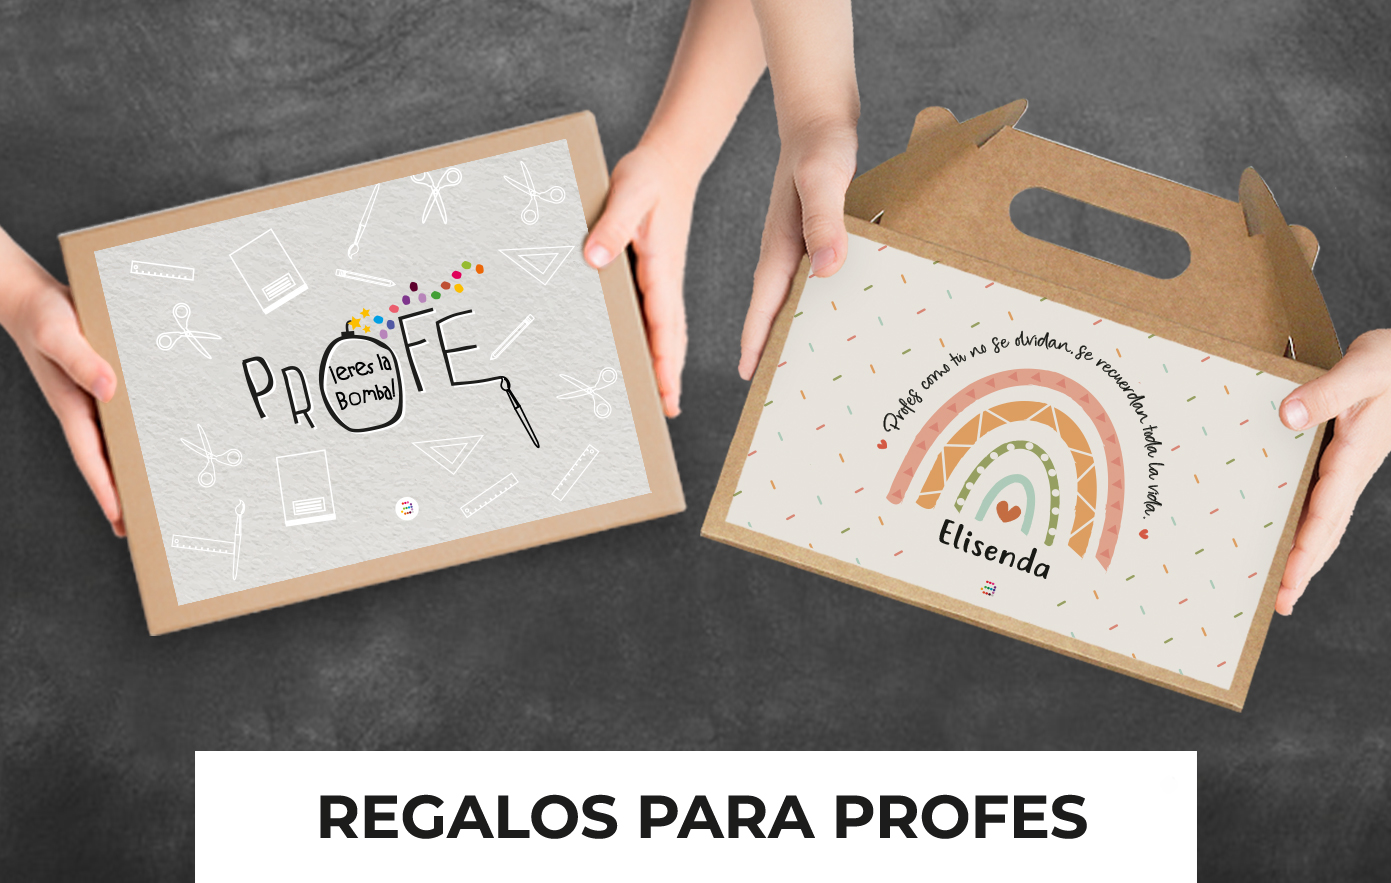 REGALOS-PARA-PROFES_ESP.jpg